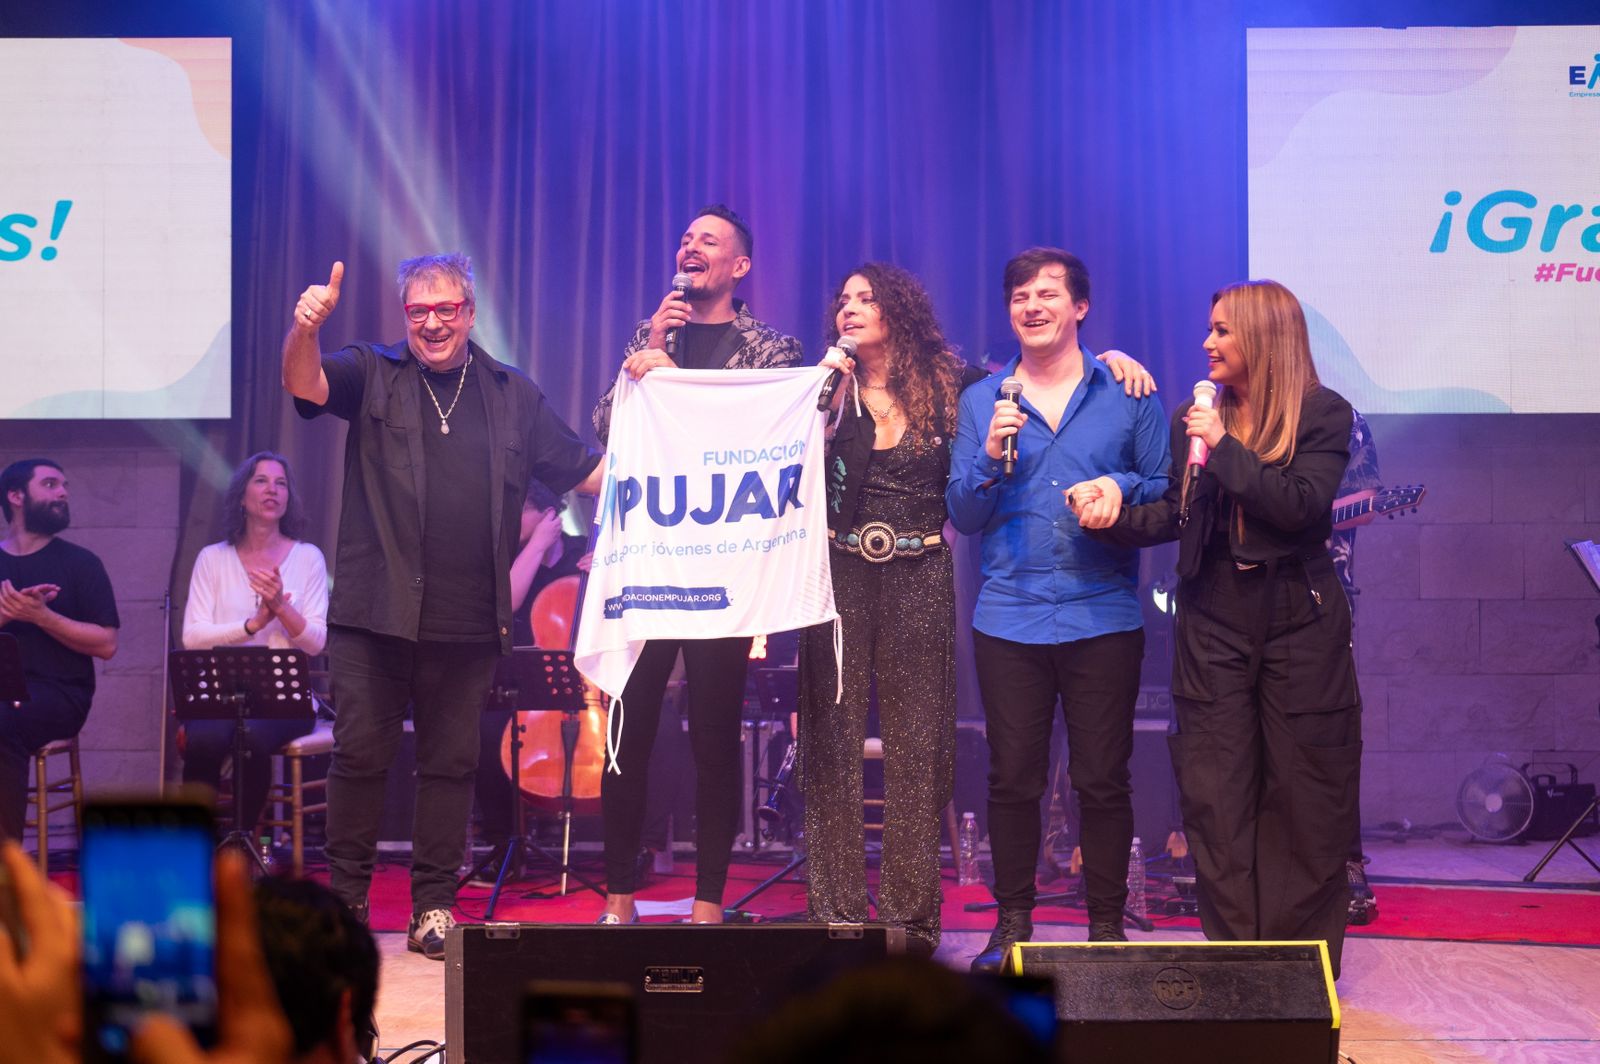 La Fundación Empujar celebró su décimo aniversario con un recital lleno de estrellas musicales y emoción